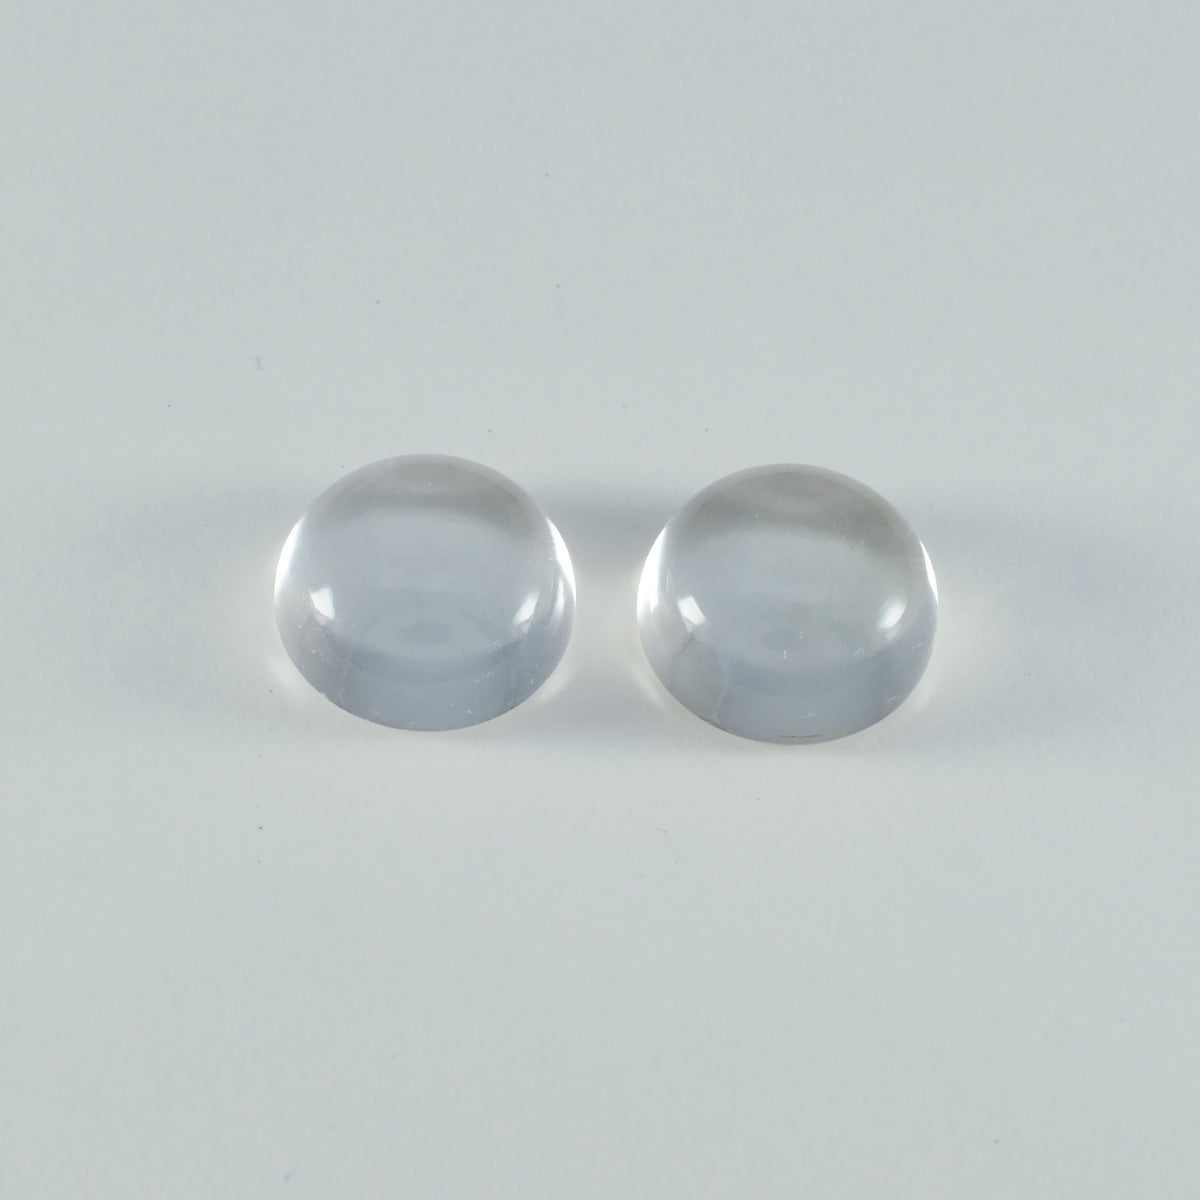 riyogems 1 шт., белый кристалл кварца, кабошон 12x12 мм, круглая форма, привлекательное качество, свободные драгоценные камни